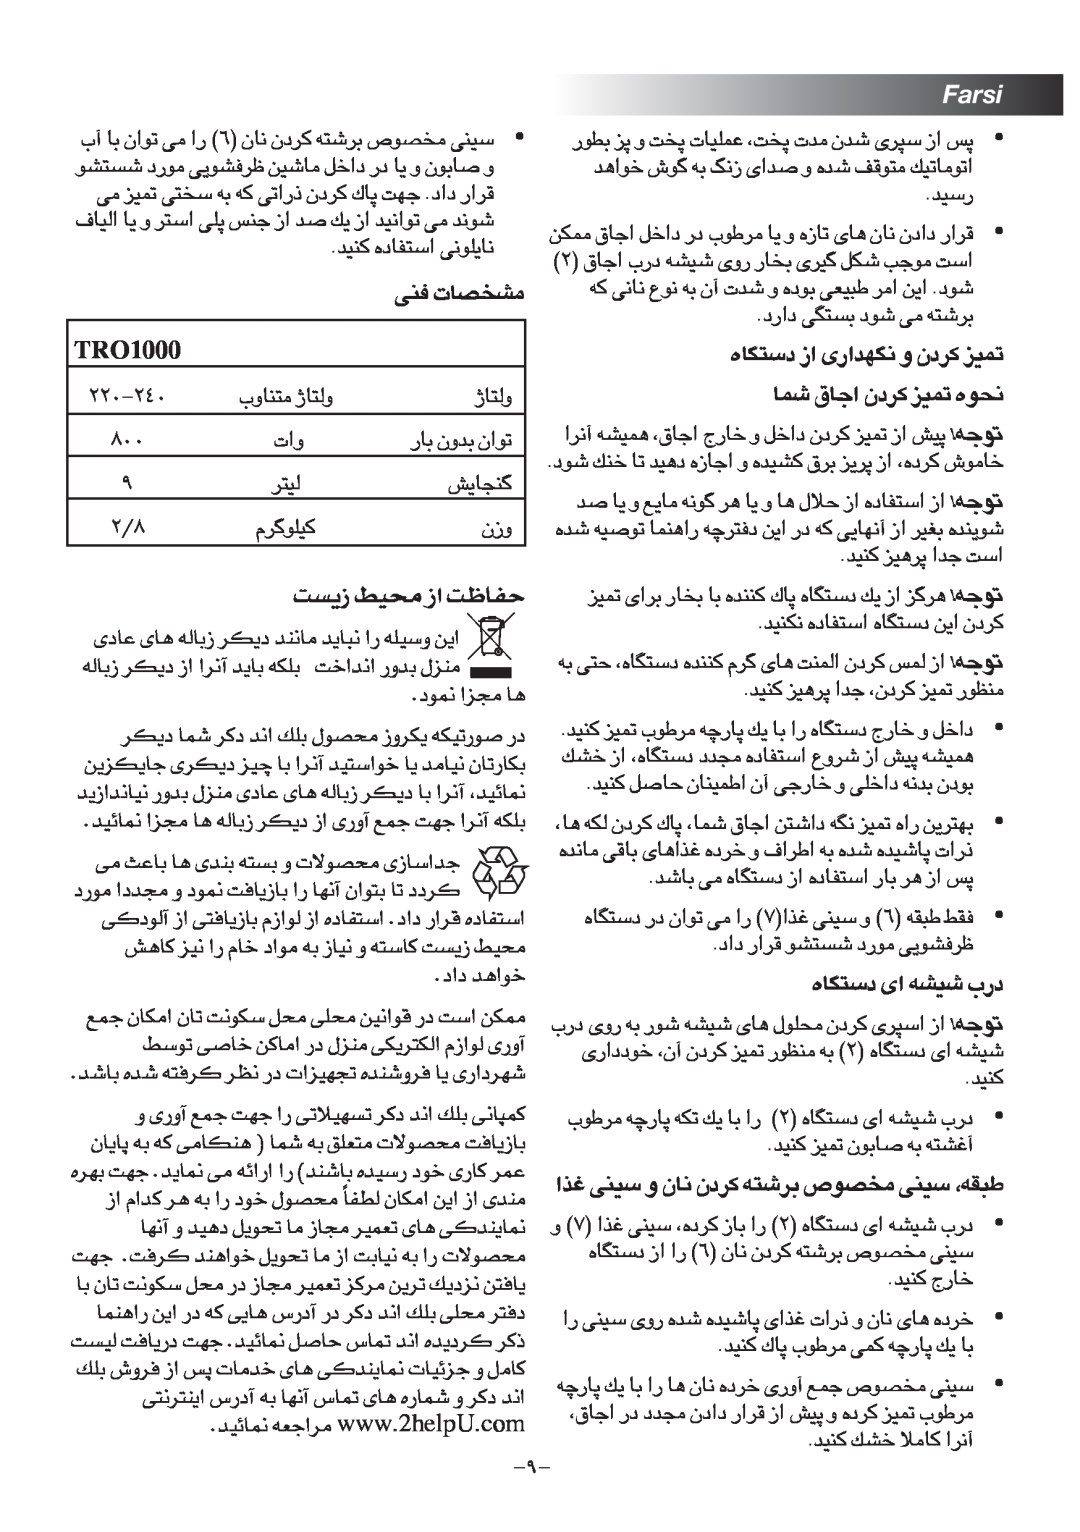 Black & Decker TRO1000 manual Farsi, 0001ORT, “¥ºX Oj ± «“ HUX 